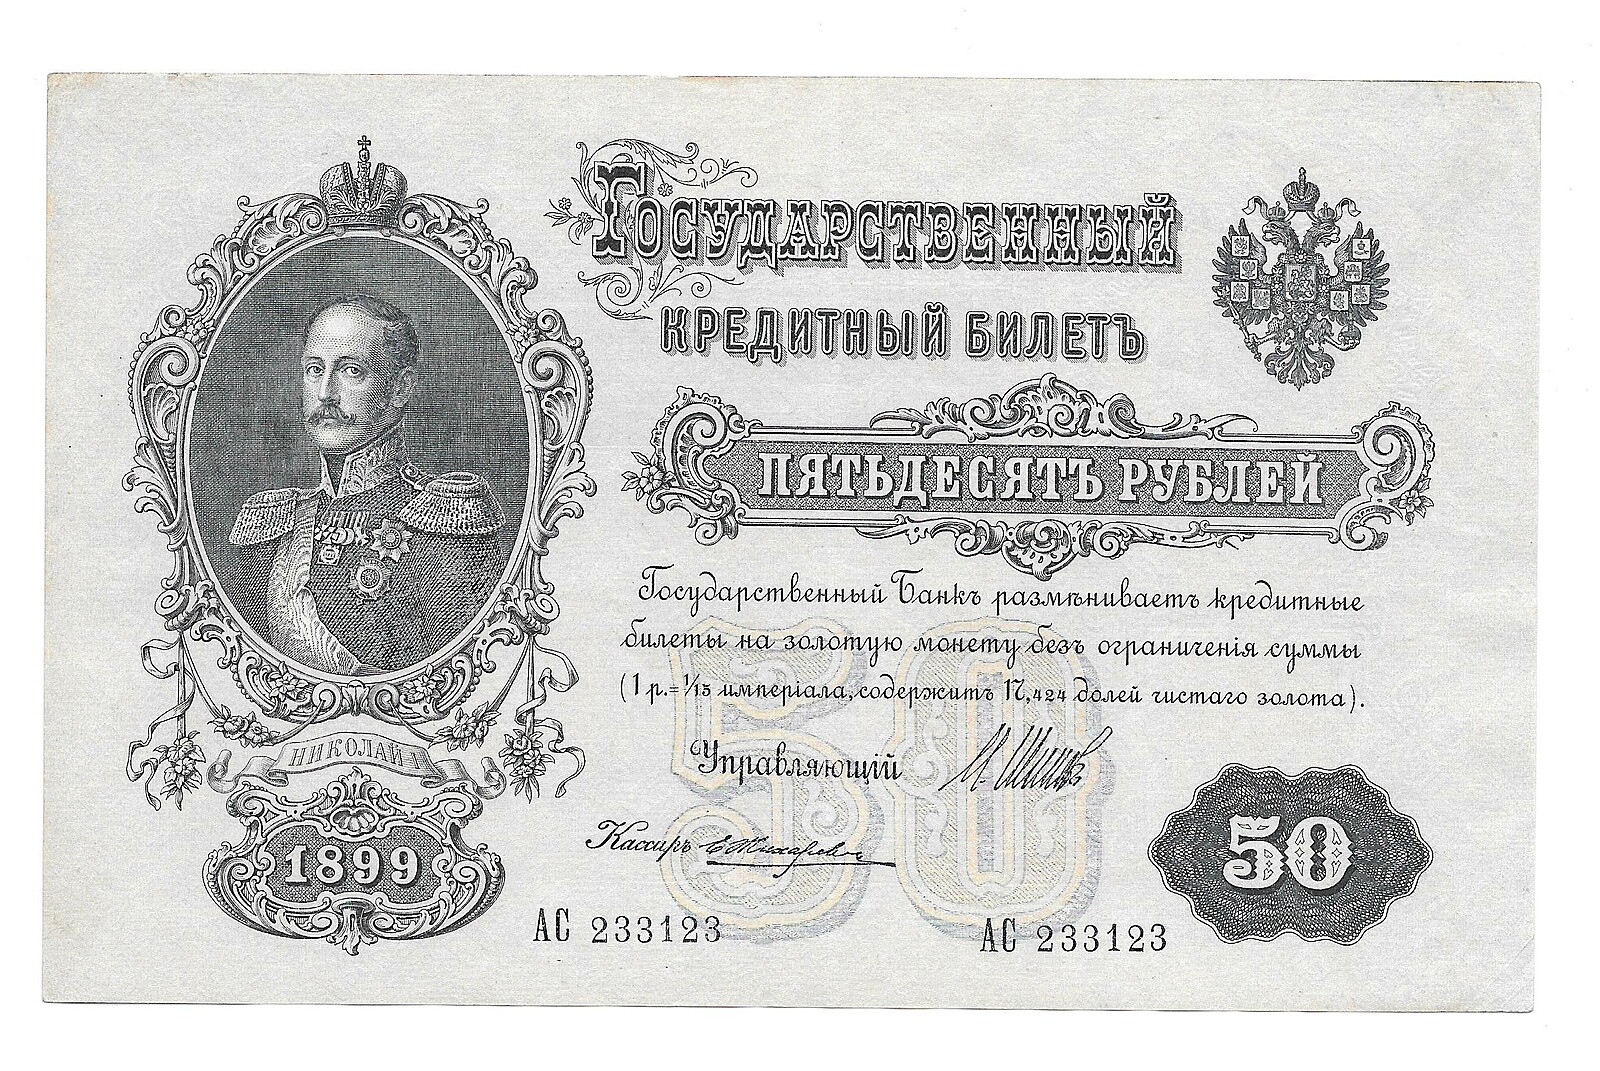 20 рублей при регистрации